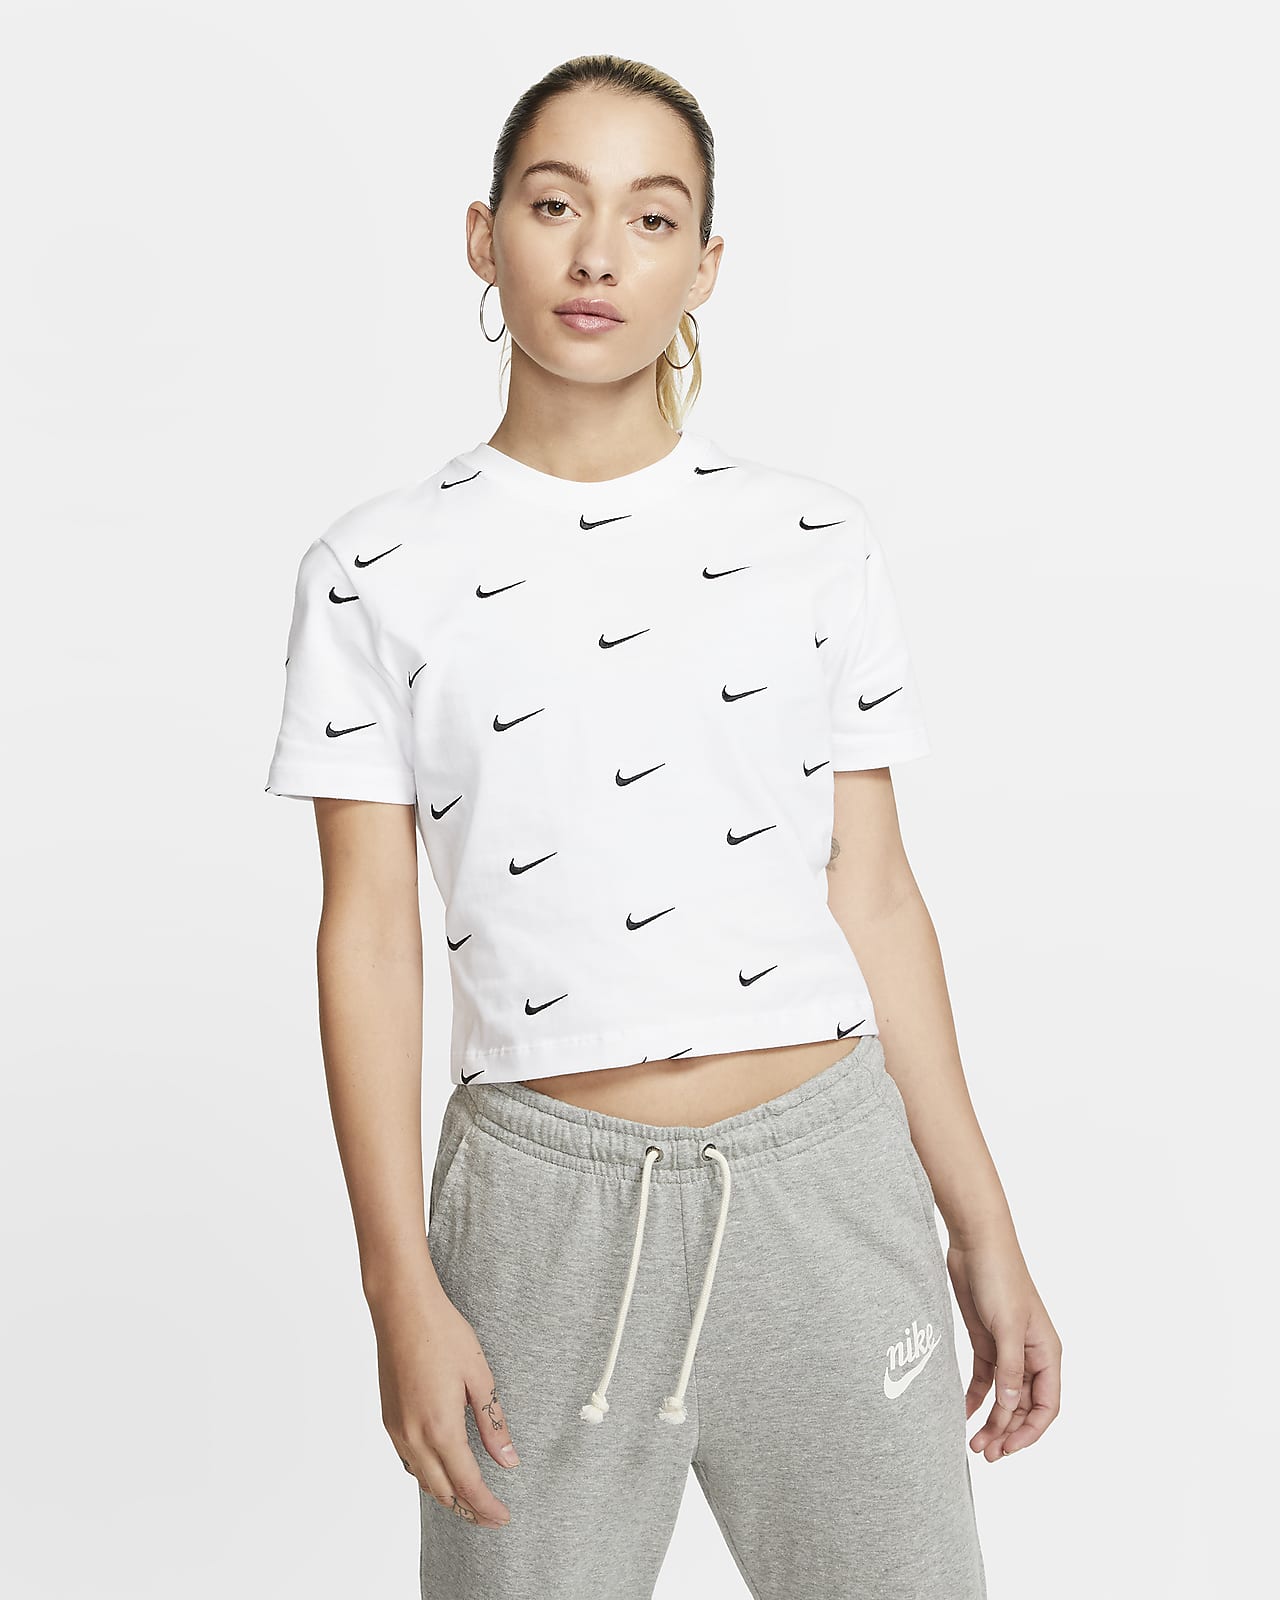 Nike 女款 Swoosh 標誌 T 恤